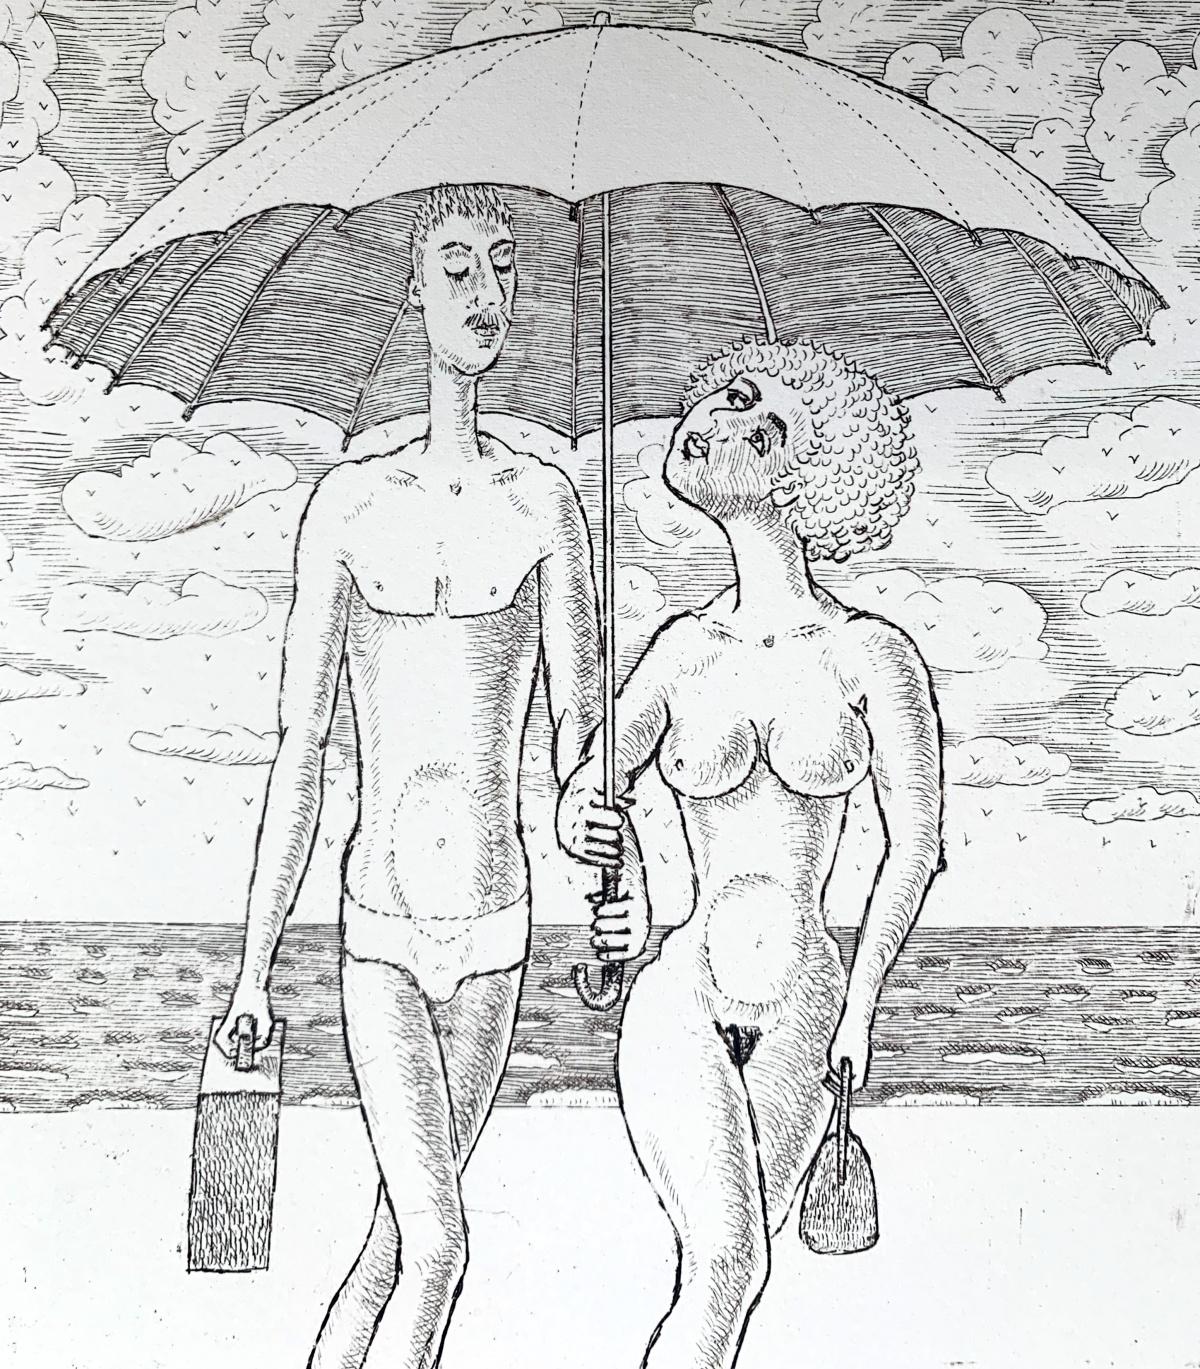 Sous un parapluie - Imprimé figuratif contemporain d'une gravure, nu, noir et blanc - Contemporain Print par Czeslaw Tumielewicz